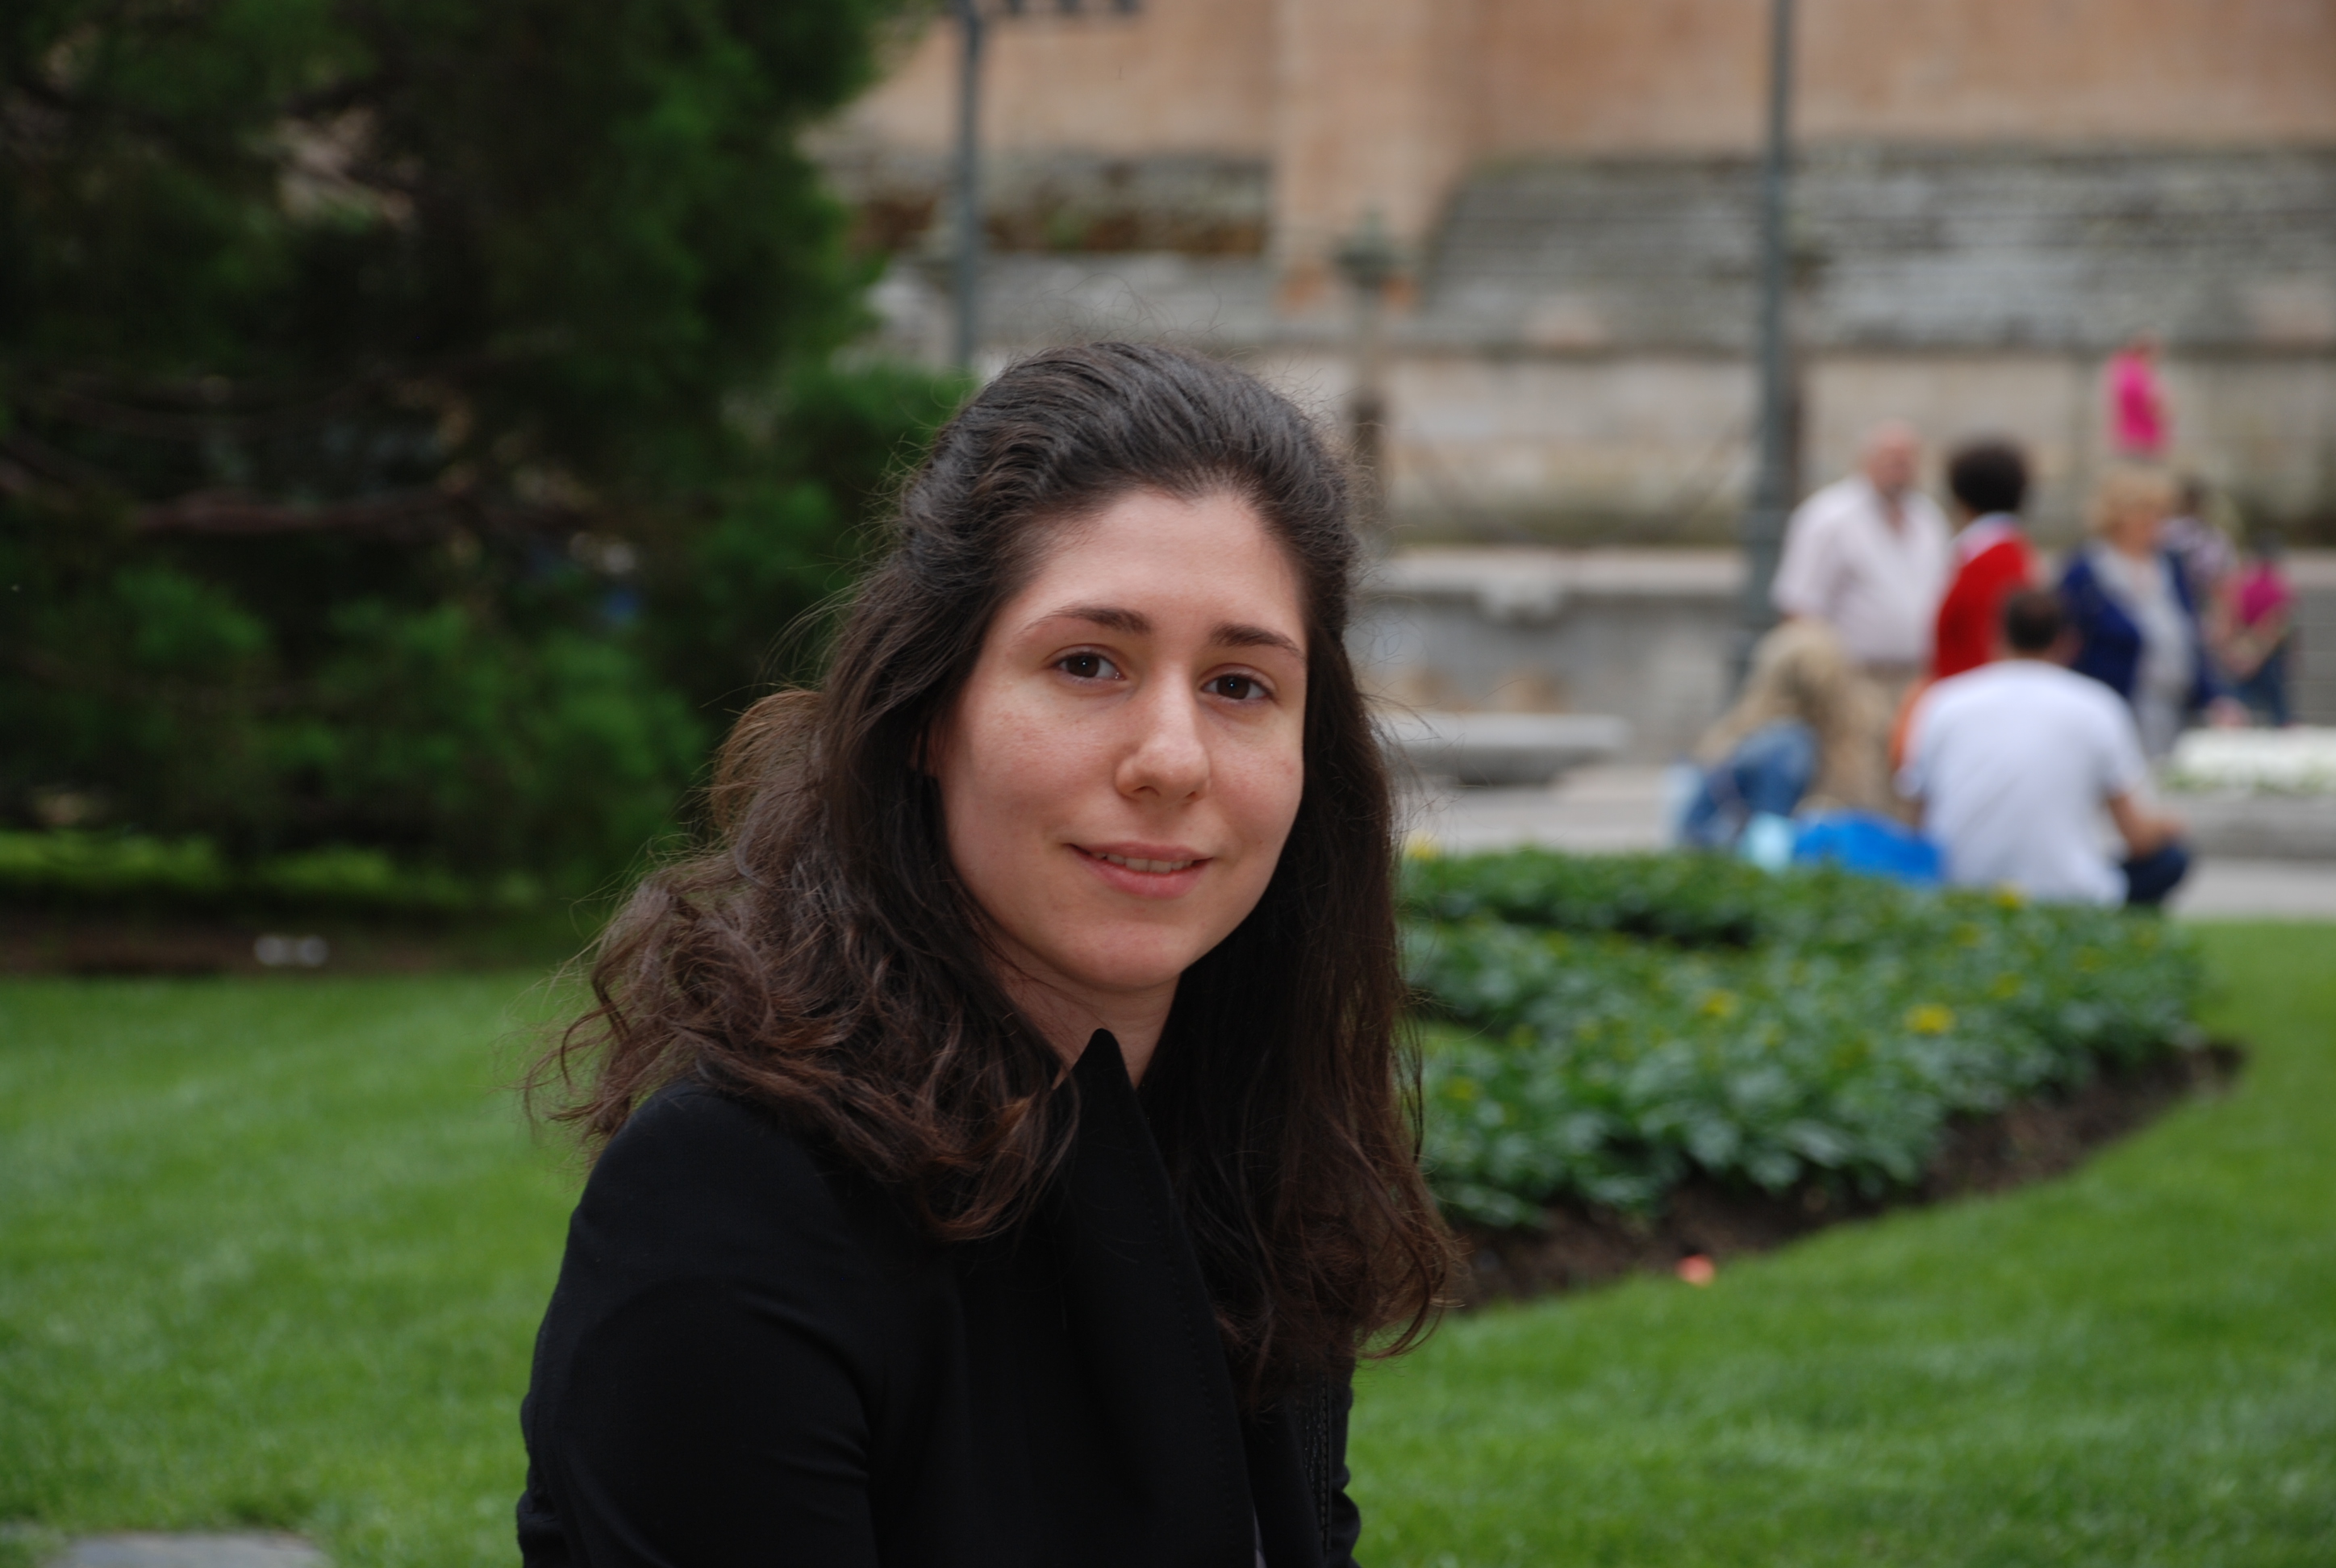 La estudiante Alicia García Adames recibe el XV Premio Andreu Febrer de Traducción Literaria